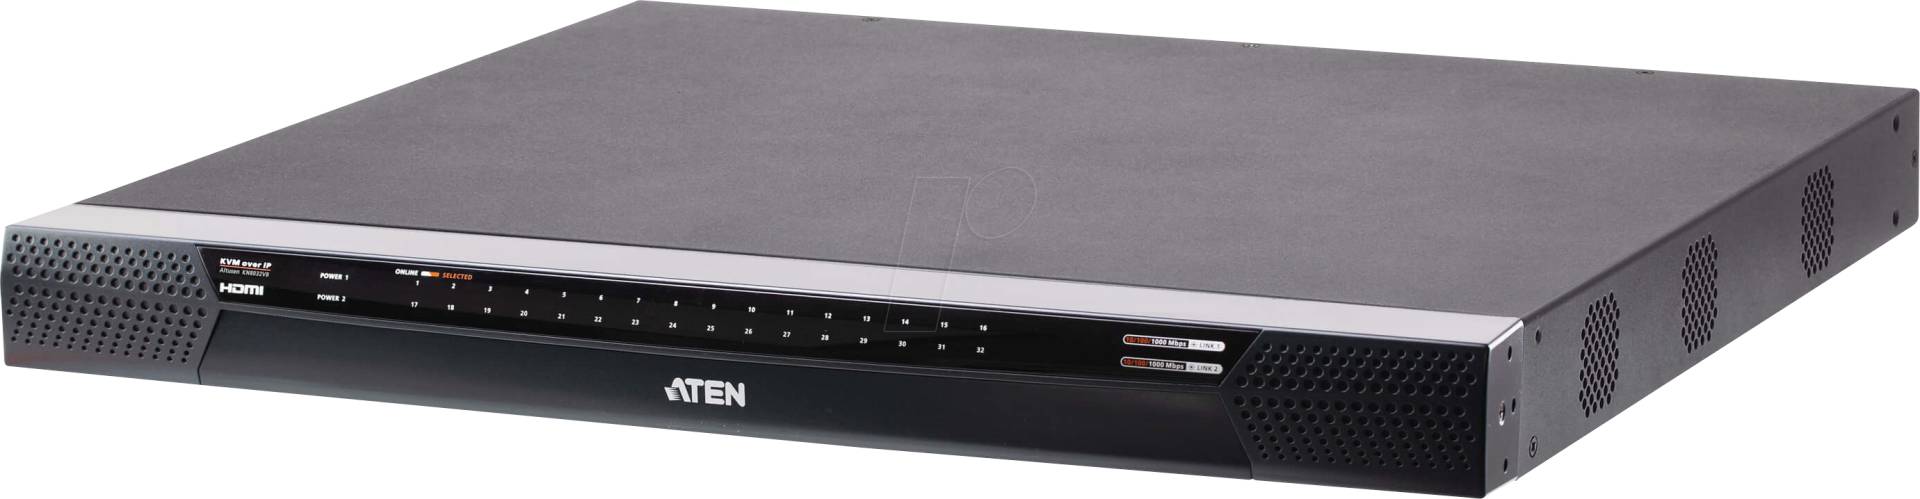 ATEN KN8032VB - 32-Port KVM over IP Switch, HDMI, USB von Aten